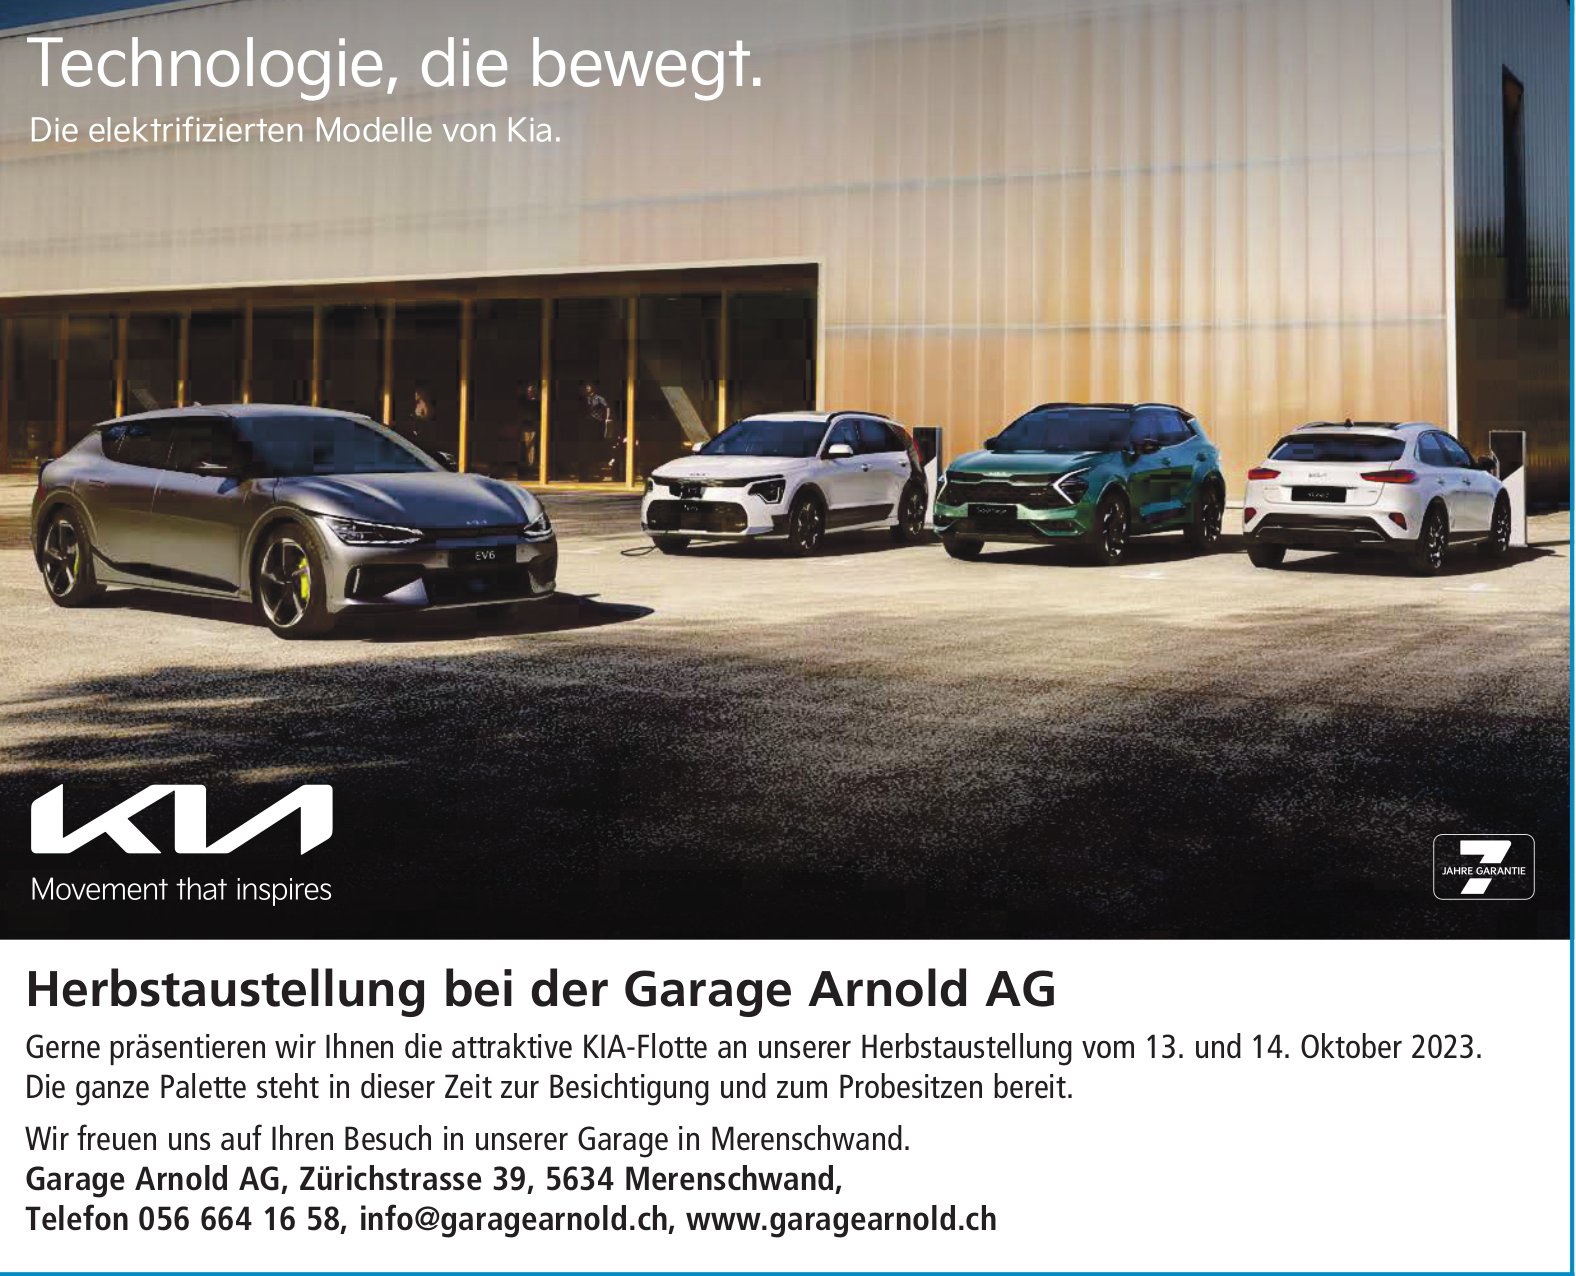 Garage Arnold AG, Merenschwand - Technologie, die bewegt.